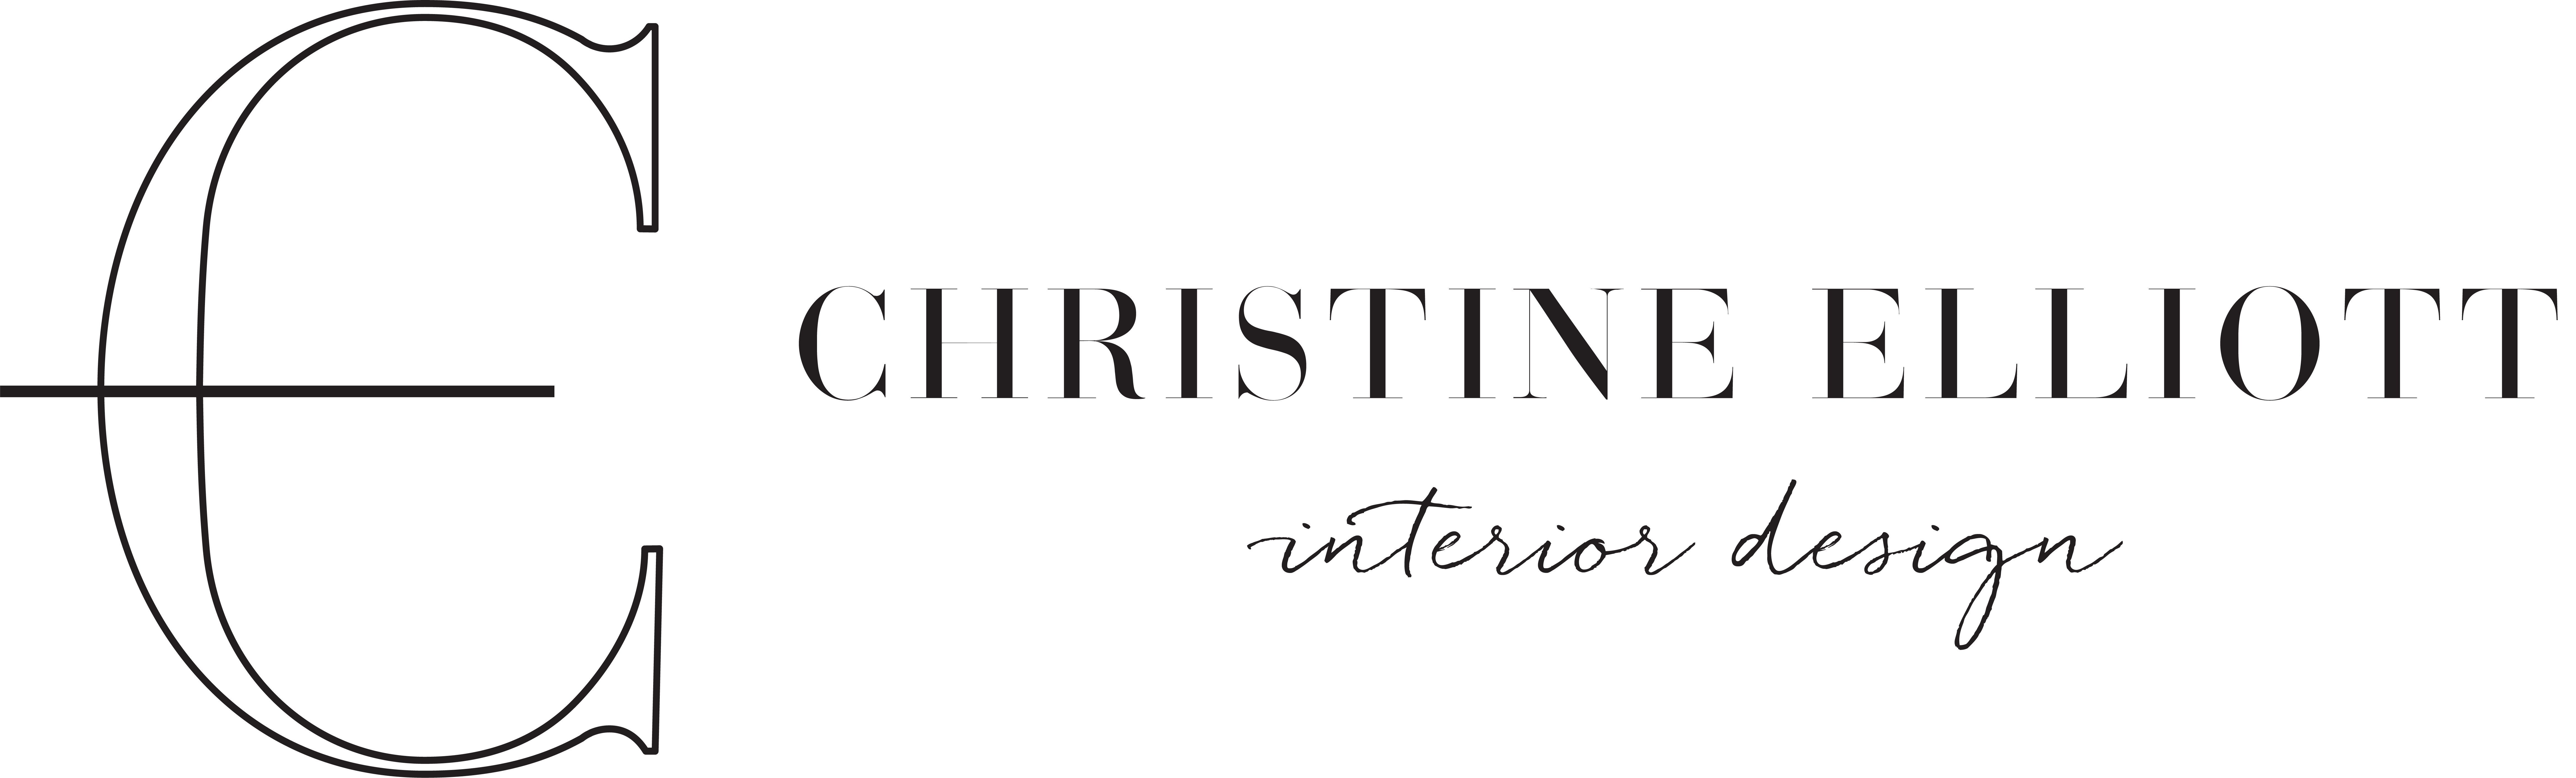 Christine_elliott_logo_long_black